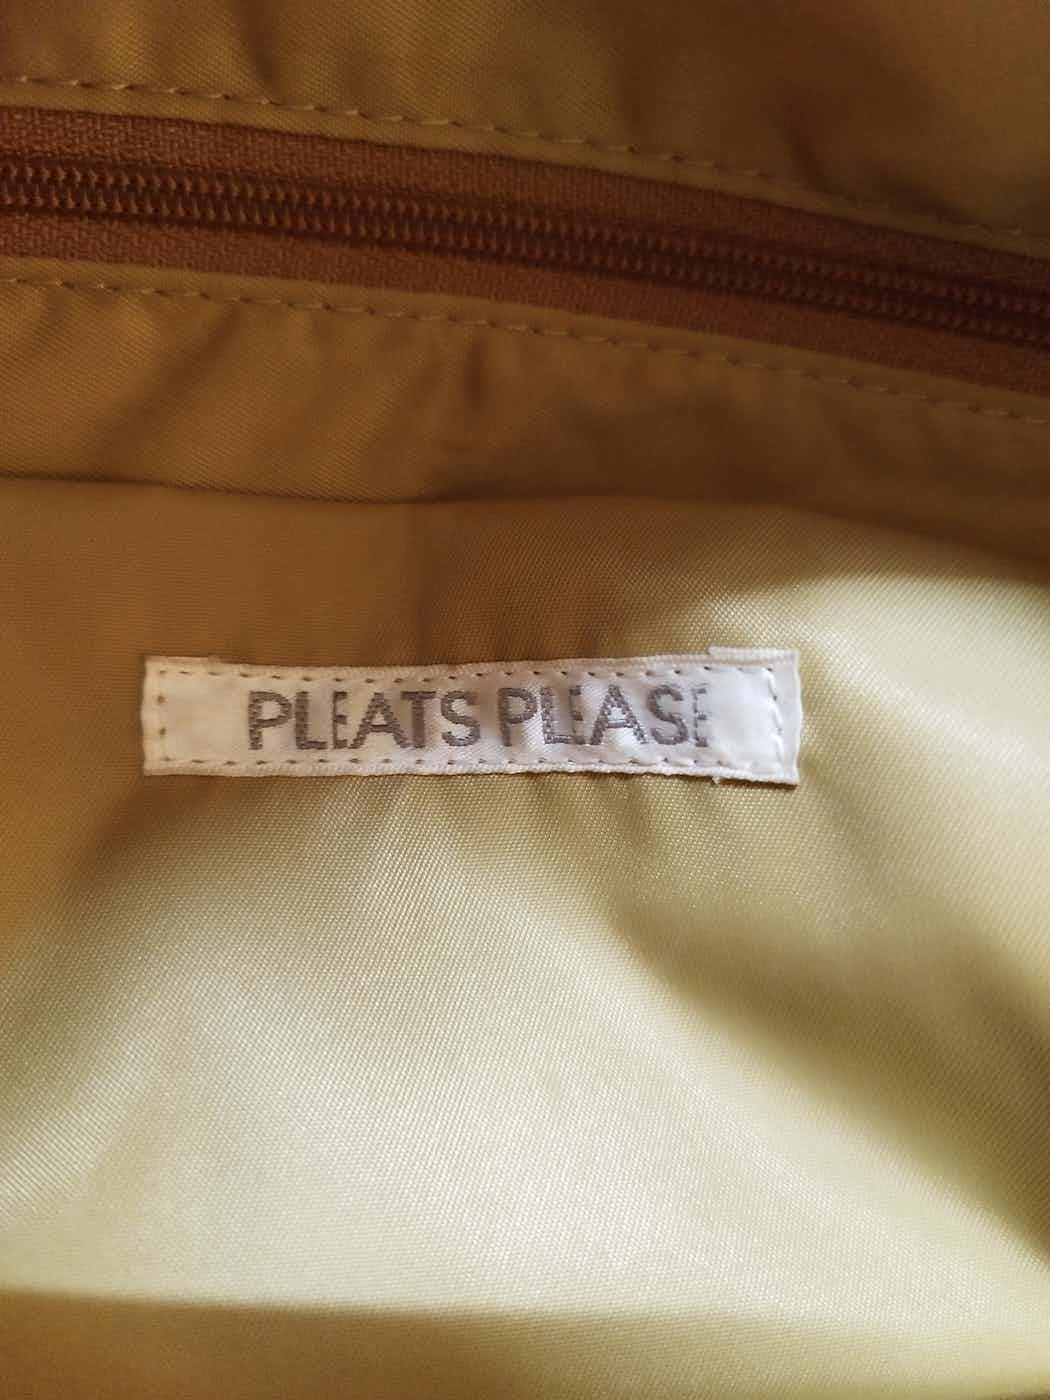 Issey miyake pleats please shoulder bag - 6